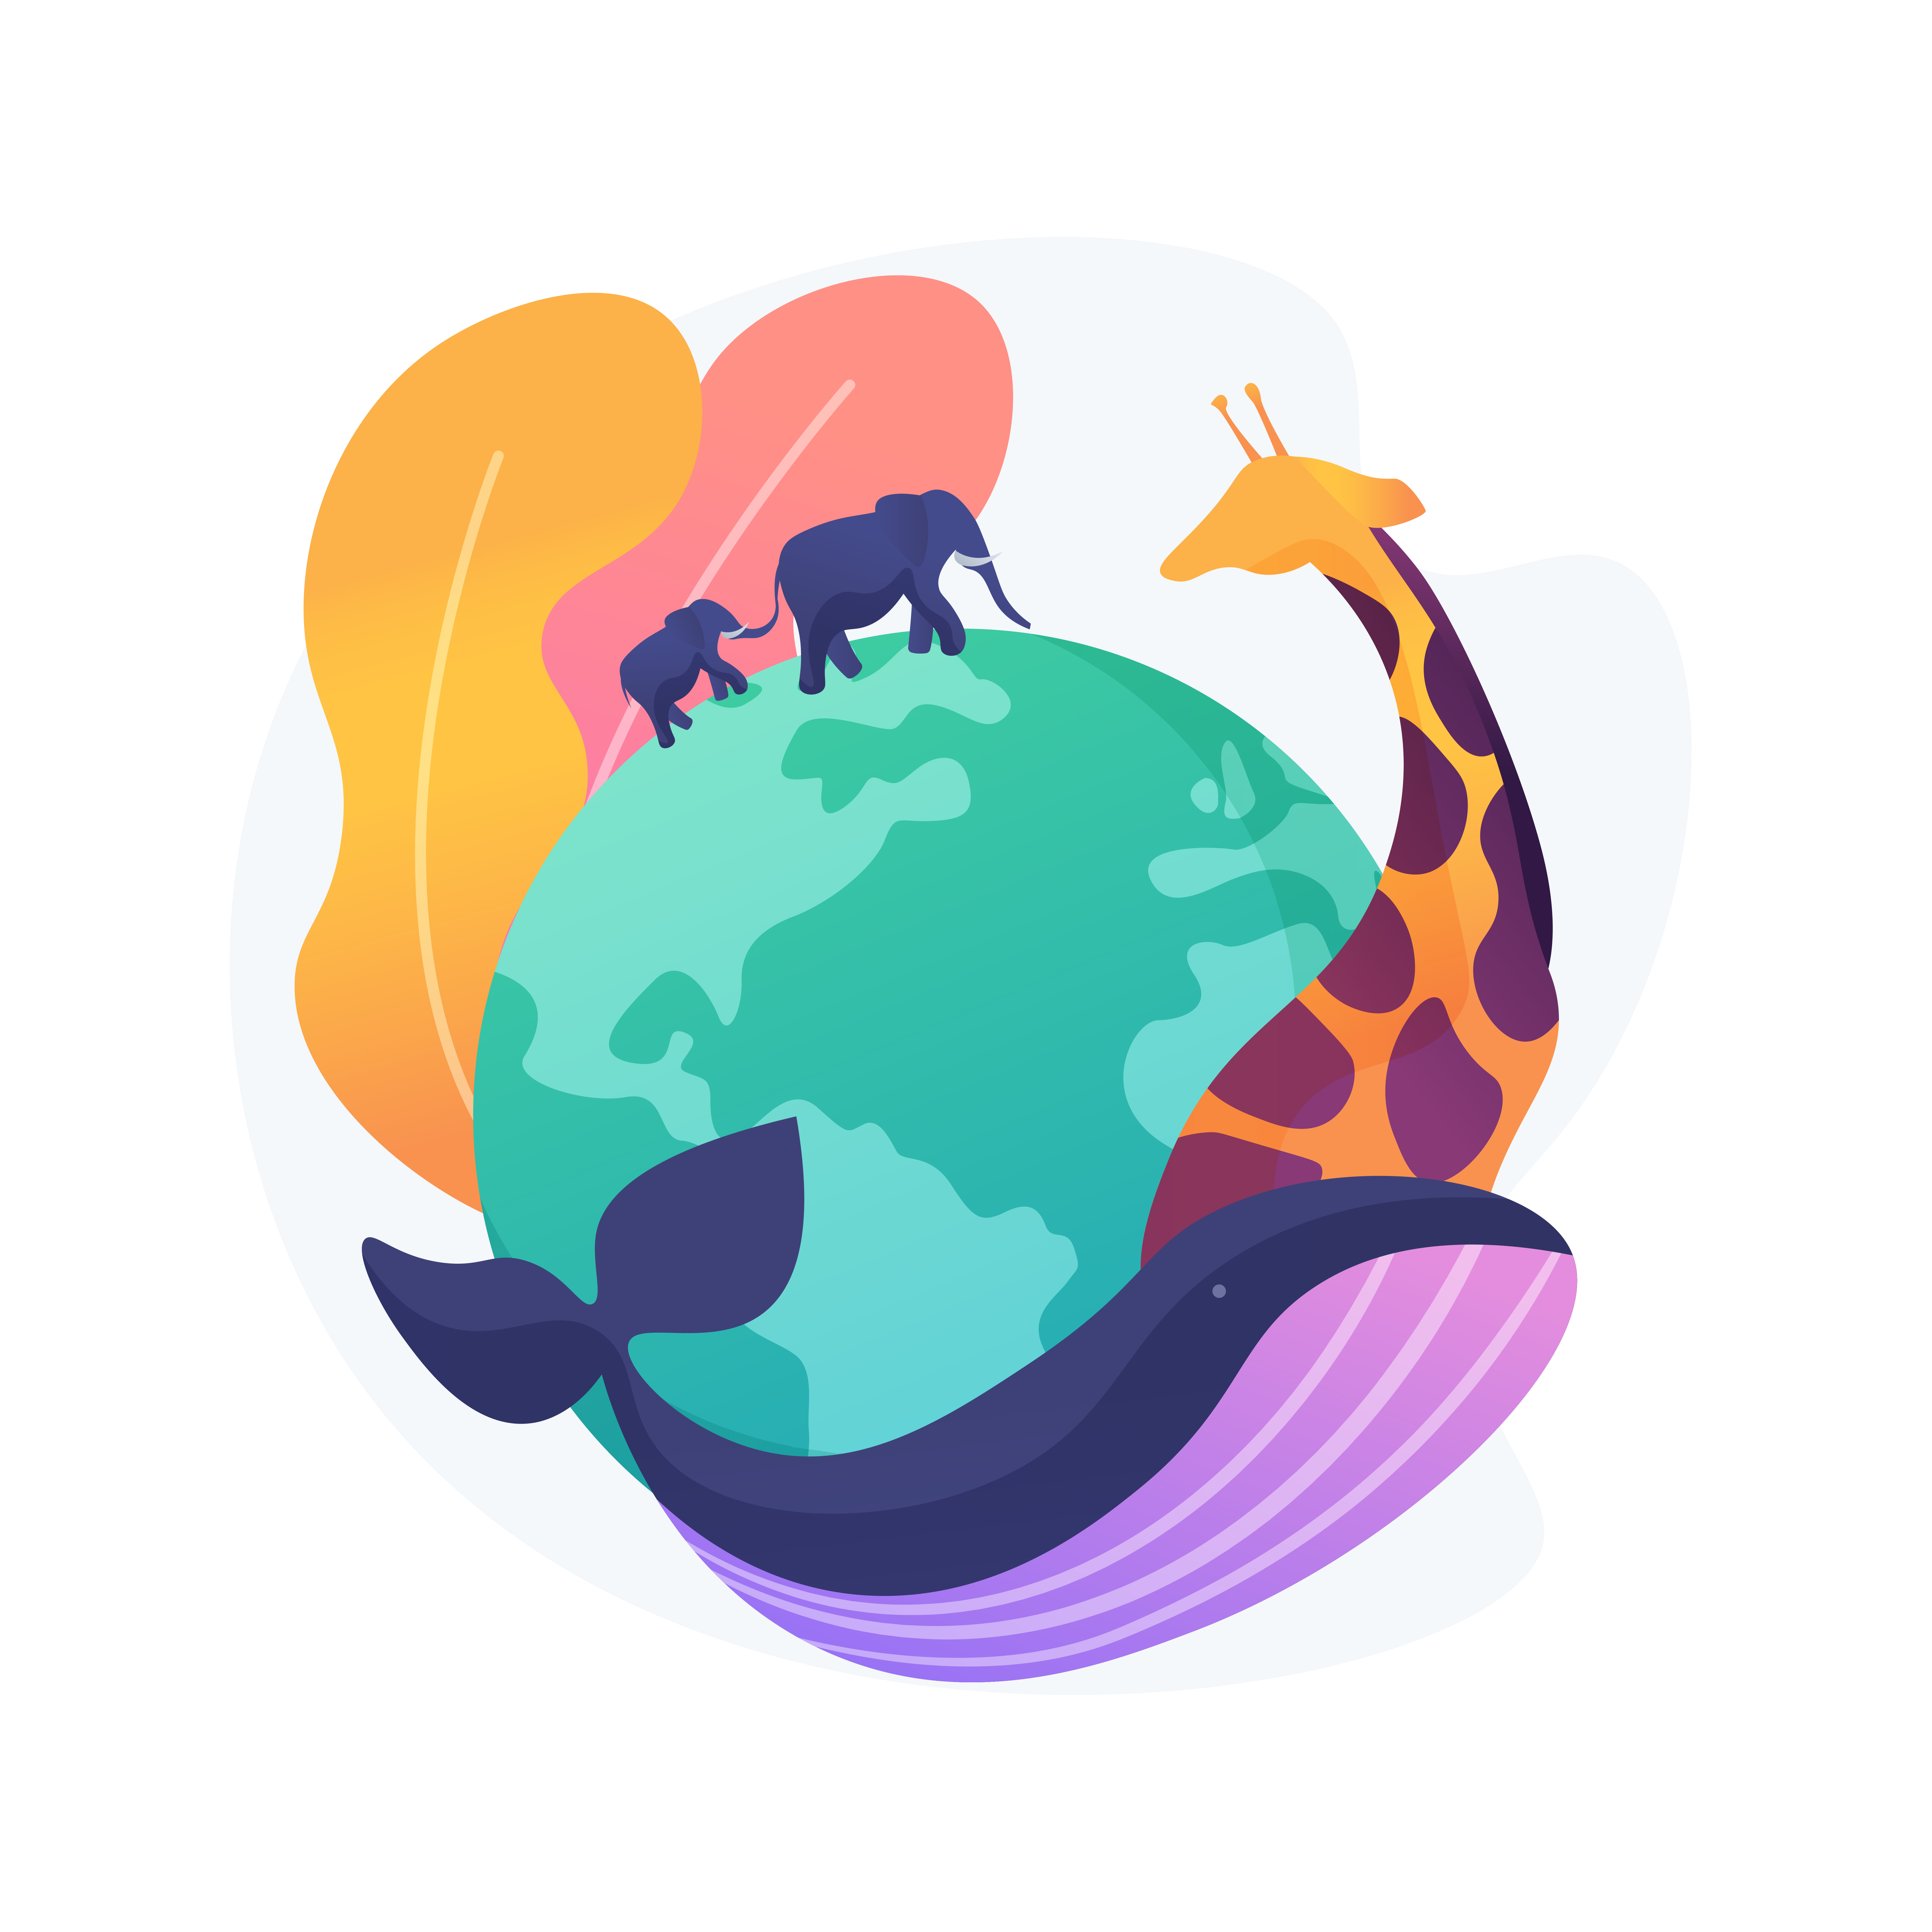 Disegno rappresentativo della biodiversità nel mondo con balene, giraffe ed elefanti